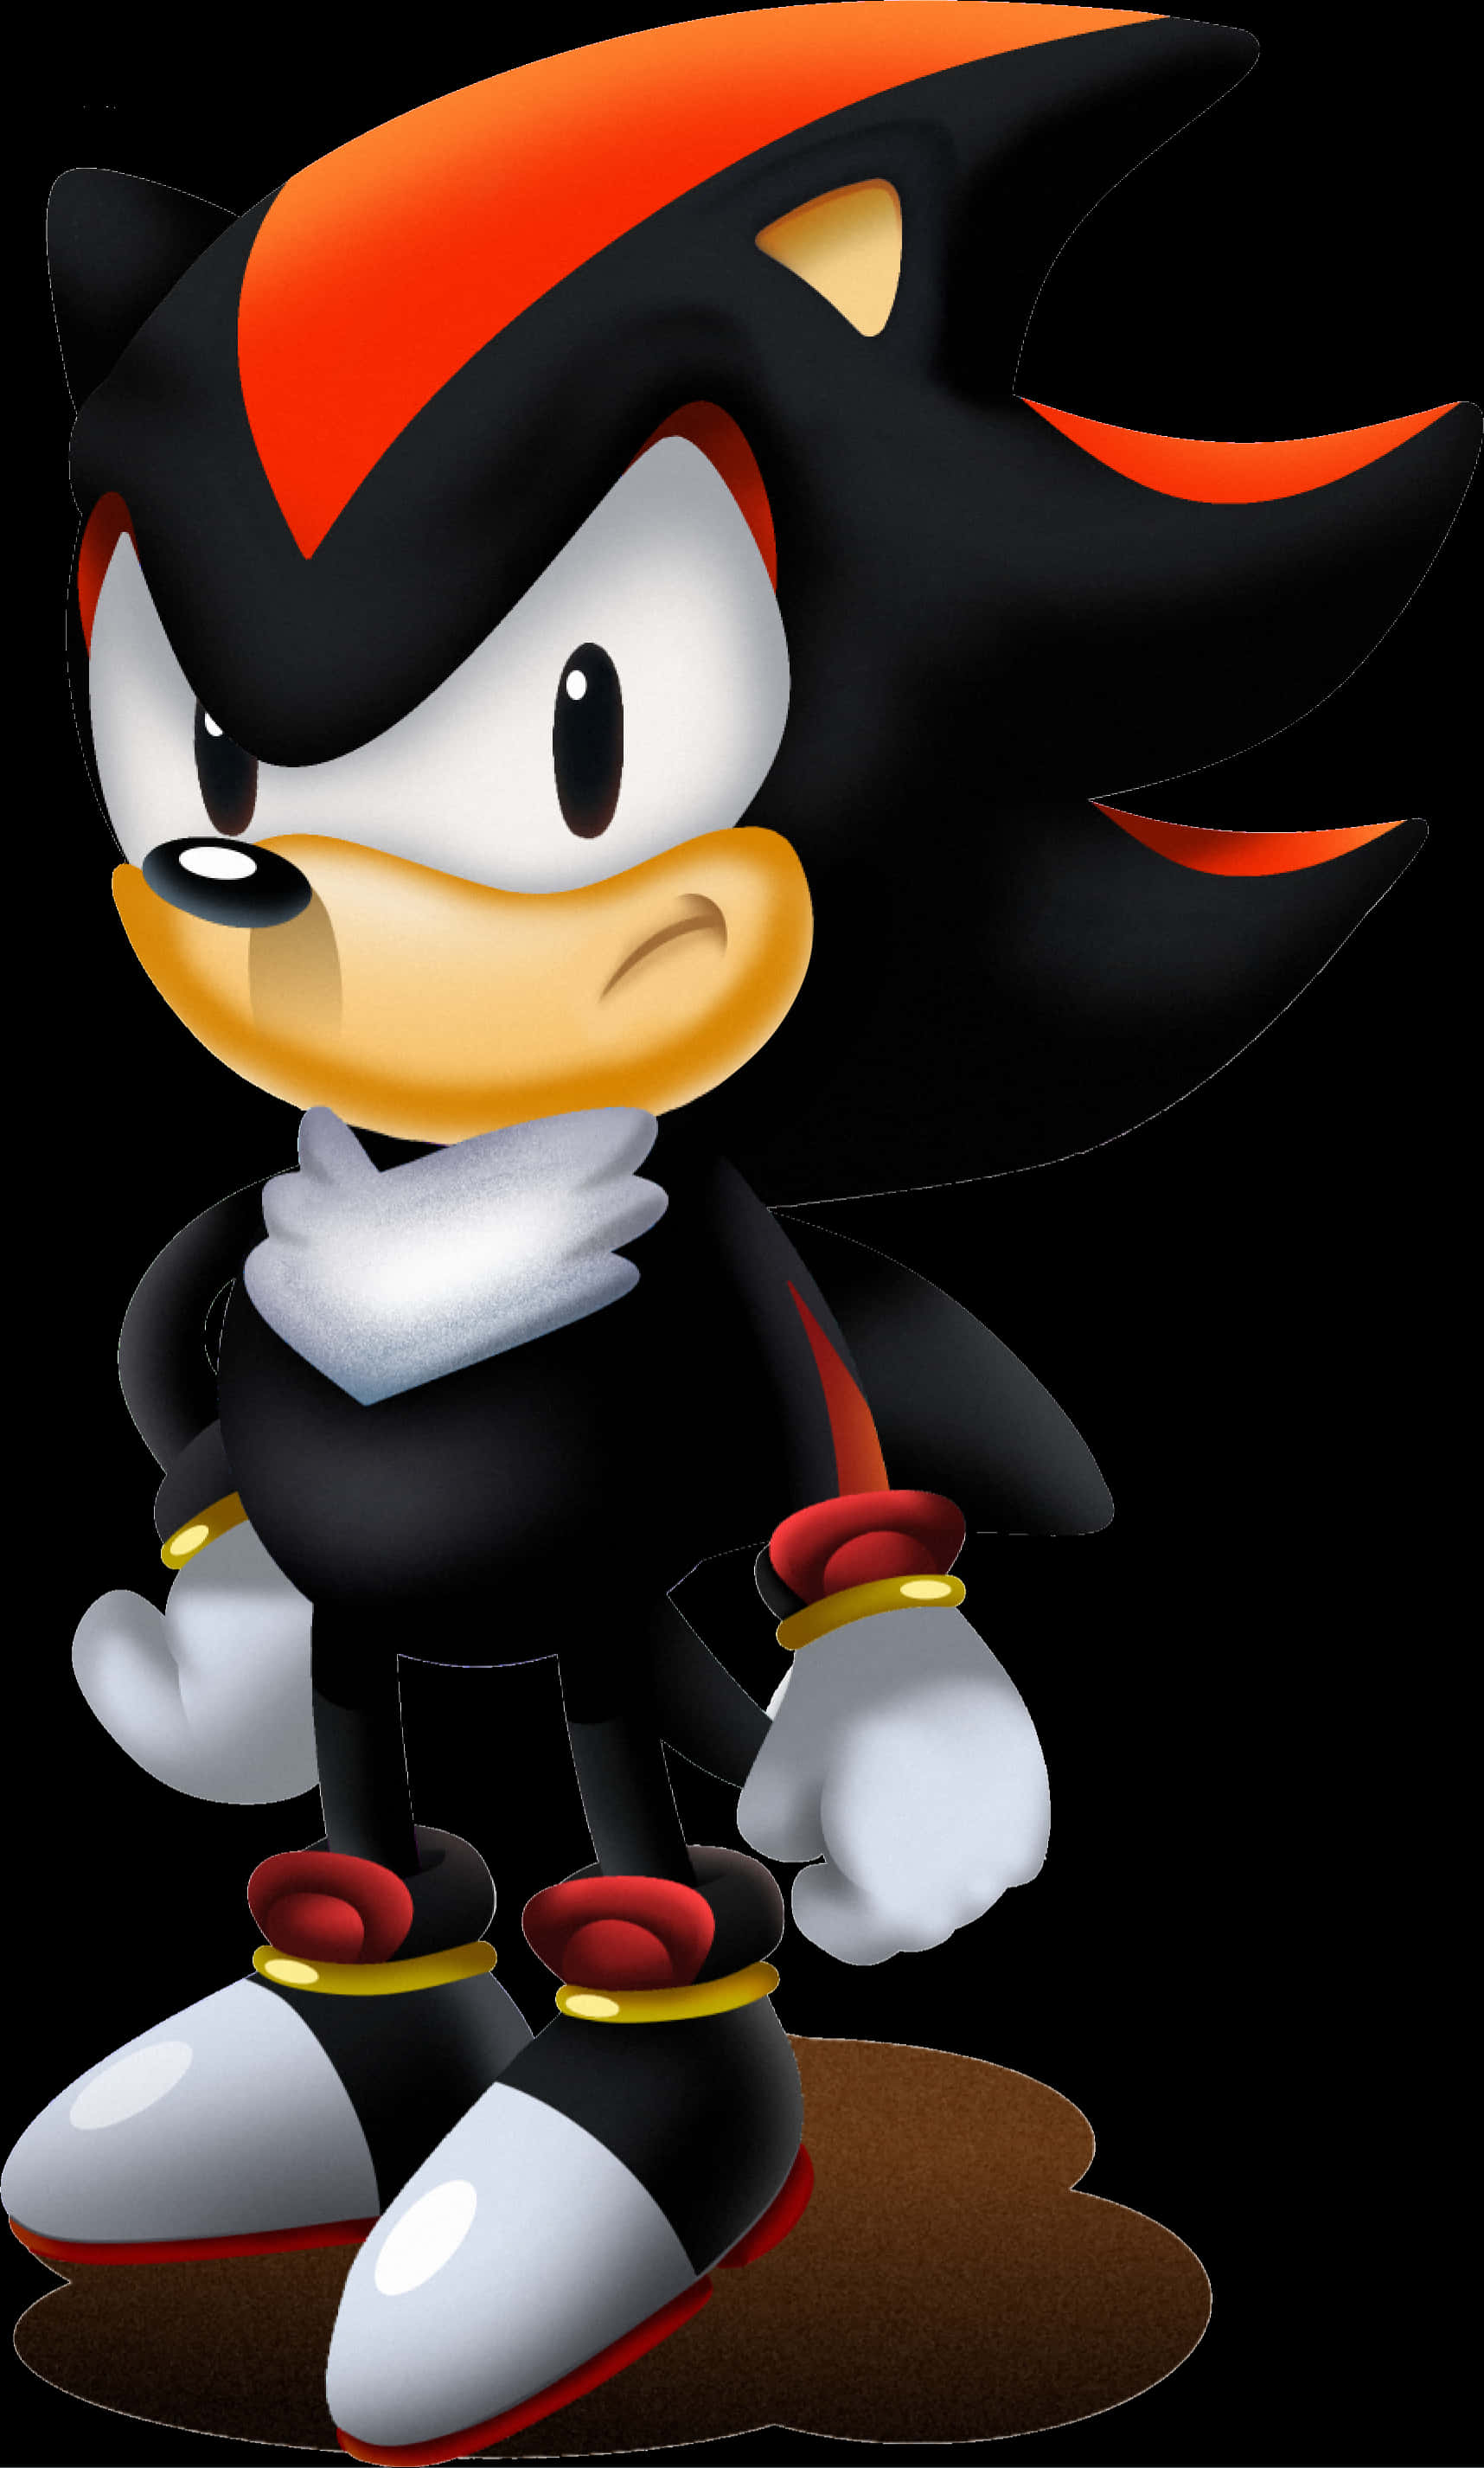 A Cartoon Character Of A Black Hedgehog